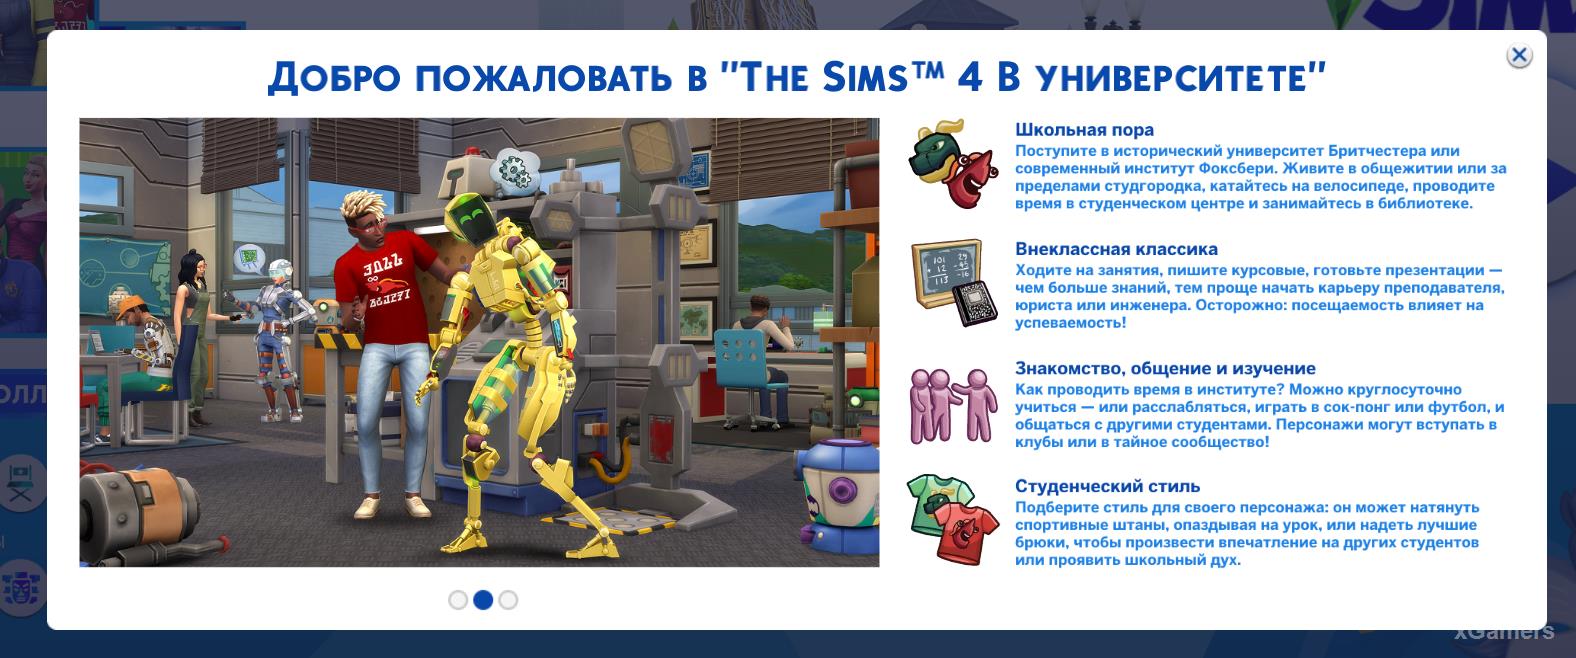 Добро пожаловать в The Sims4 в Университете